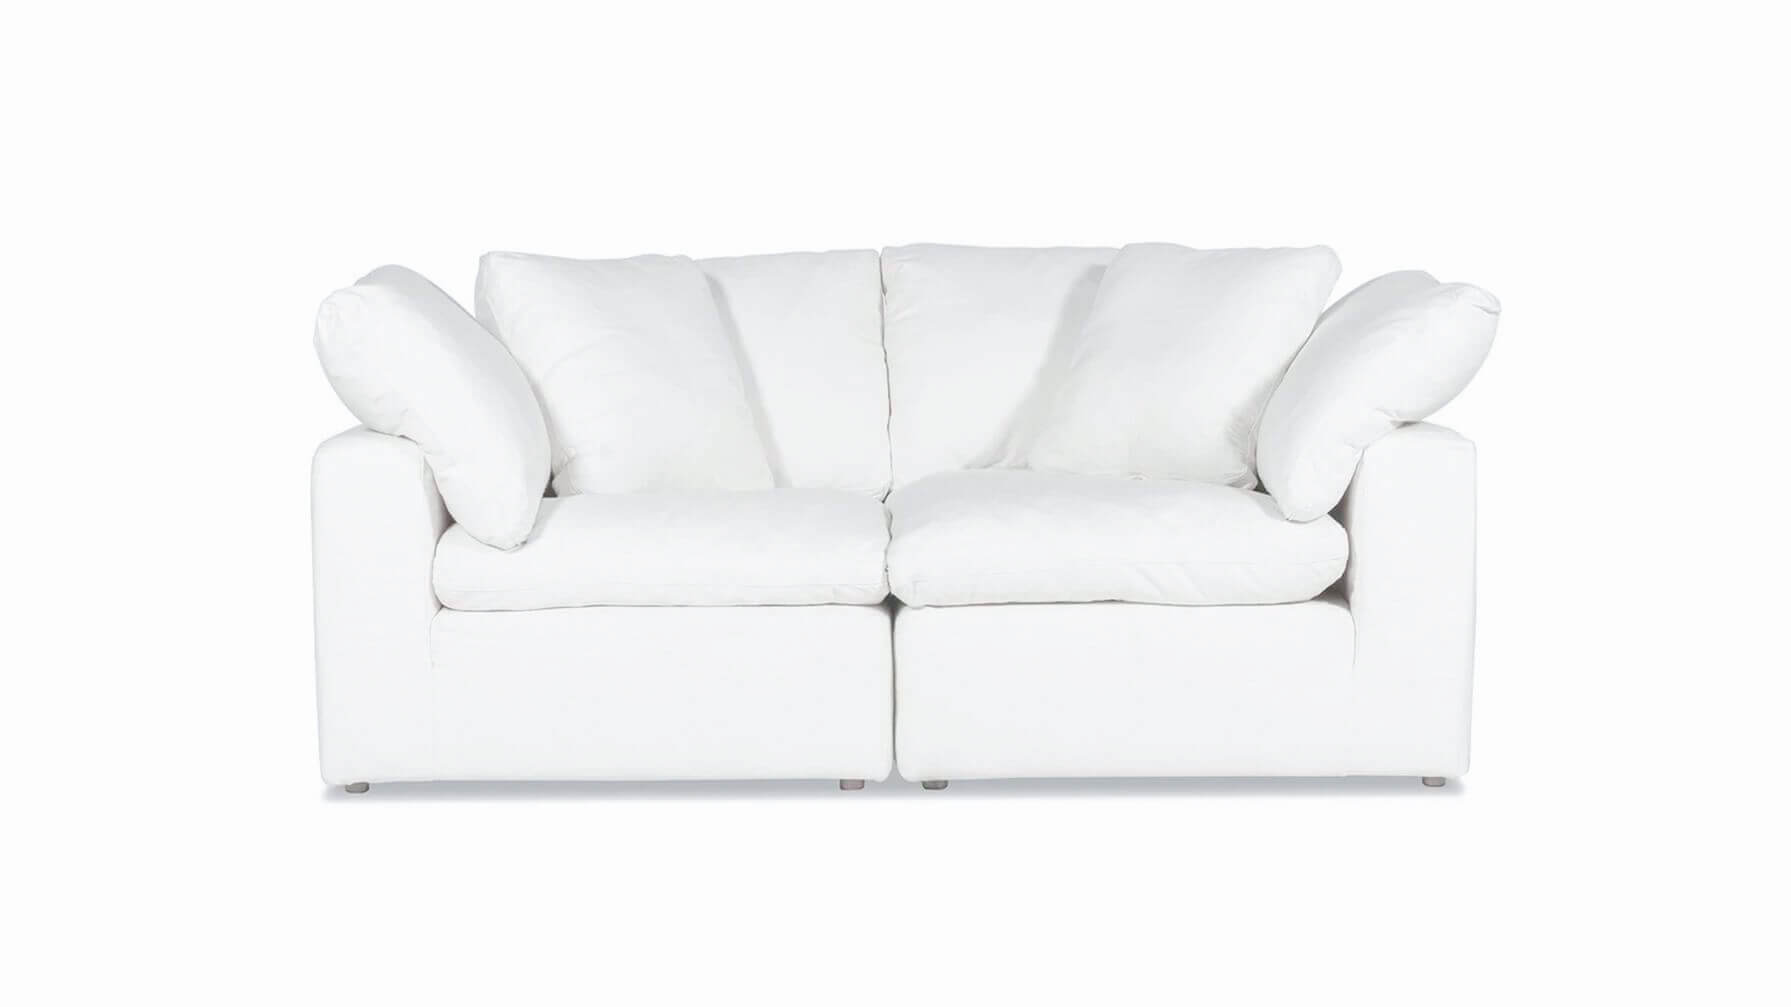 Movie Night™ 2-Piece Modular Sofa, Large, Brie - Image 1